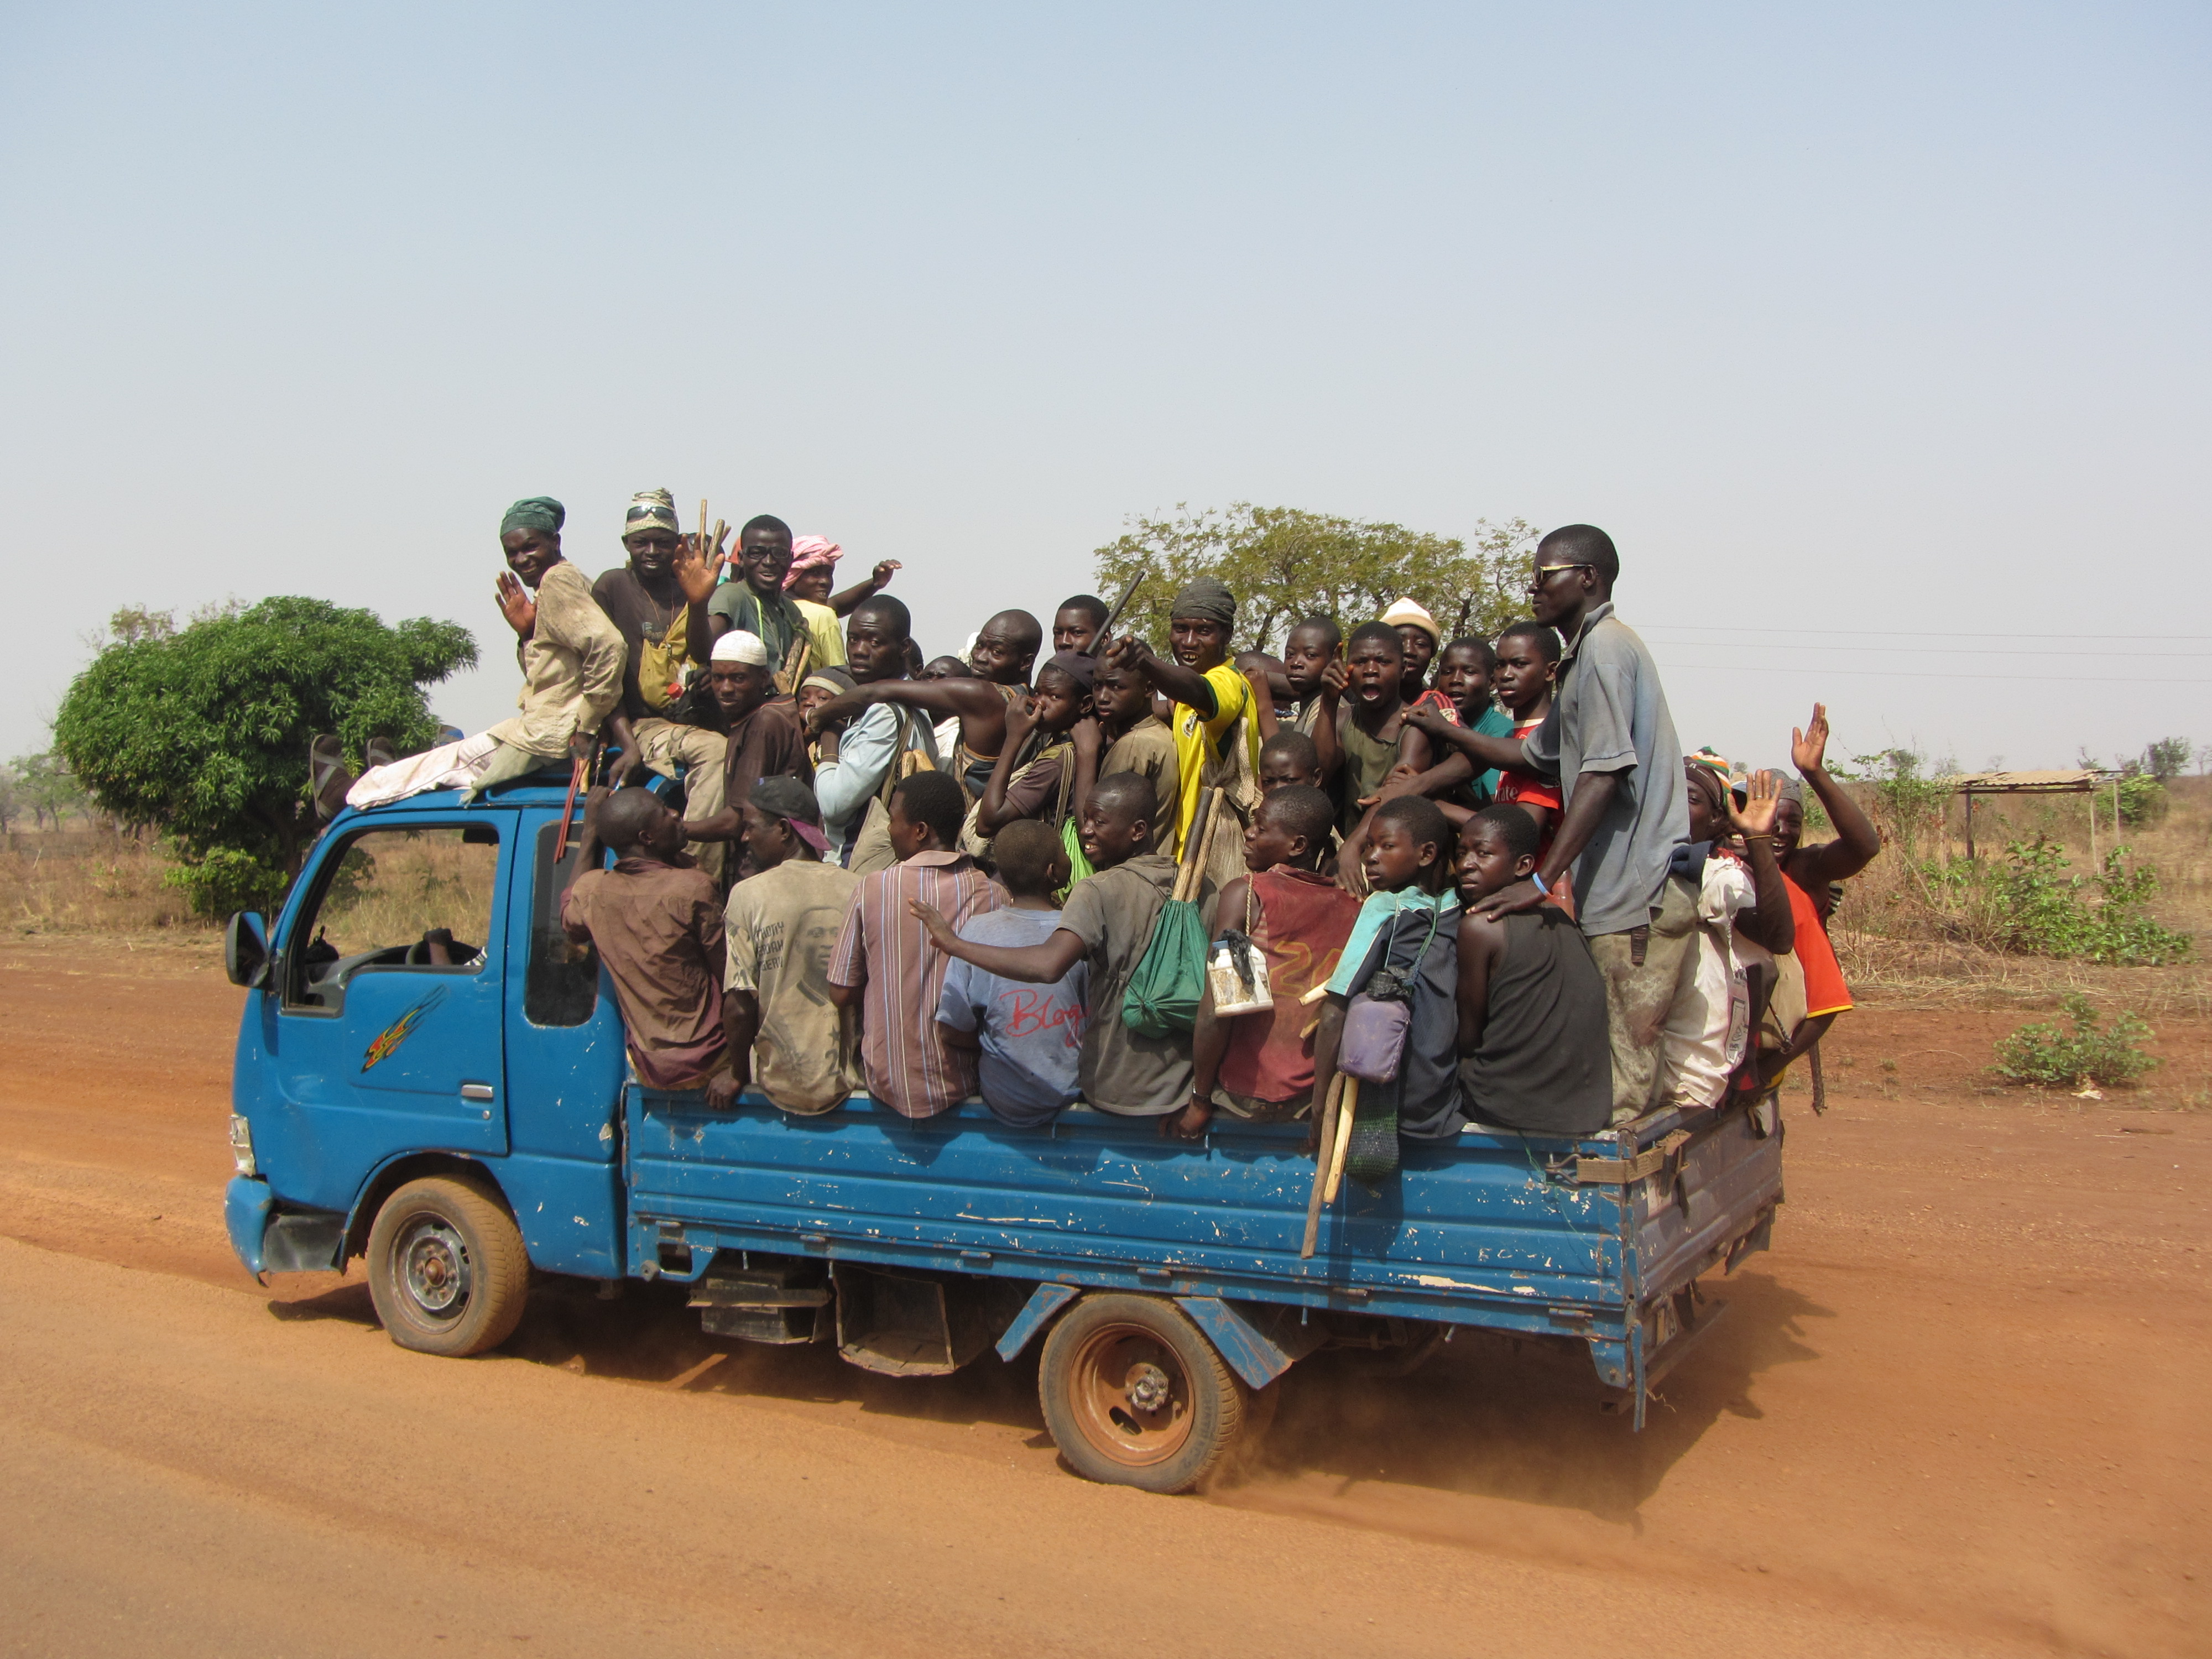 Перевозка людей работа. Пассажиры в кузове грузовика. Гана транспорт. Экономика Ганы транспорт.